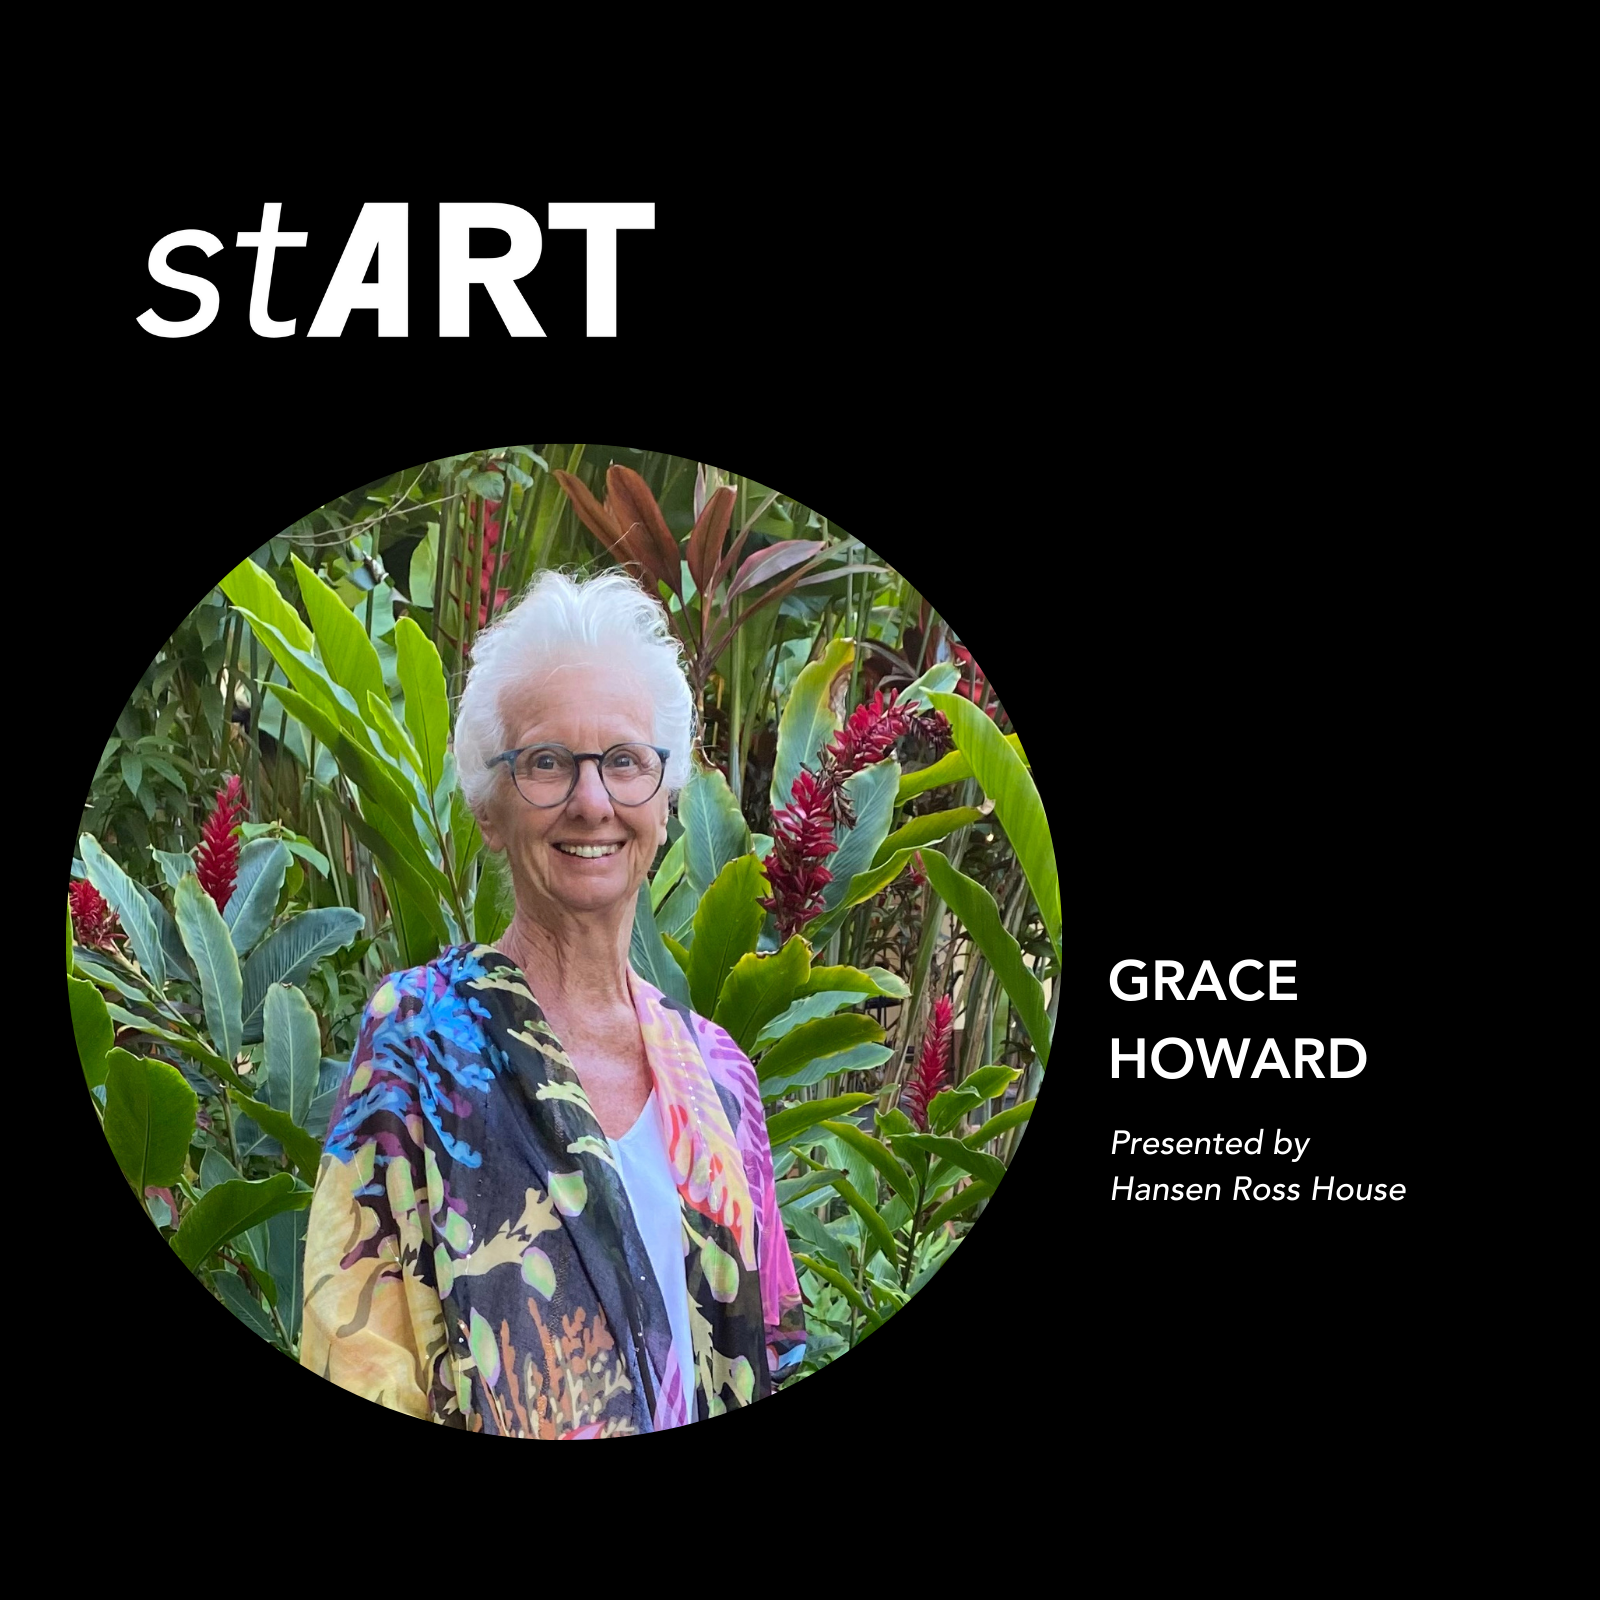 stART: Grace Howard, presented by Hansen Ross House